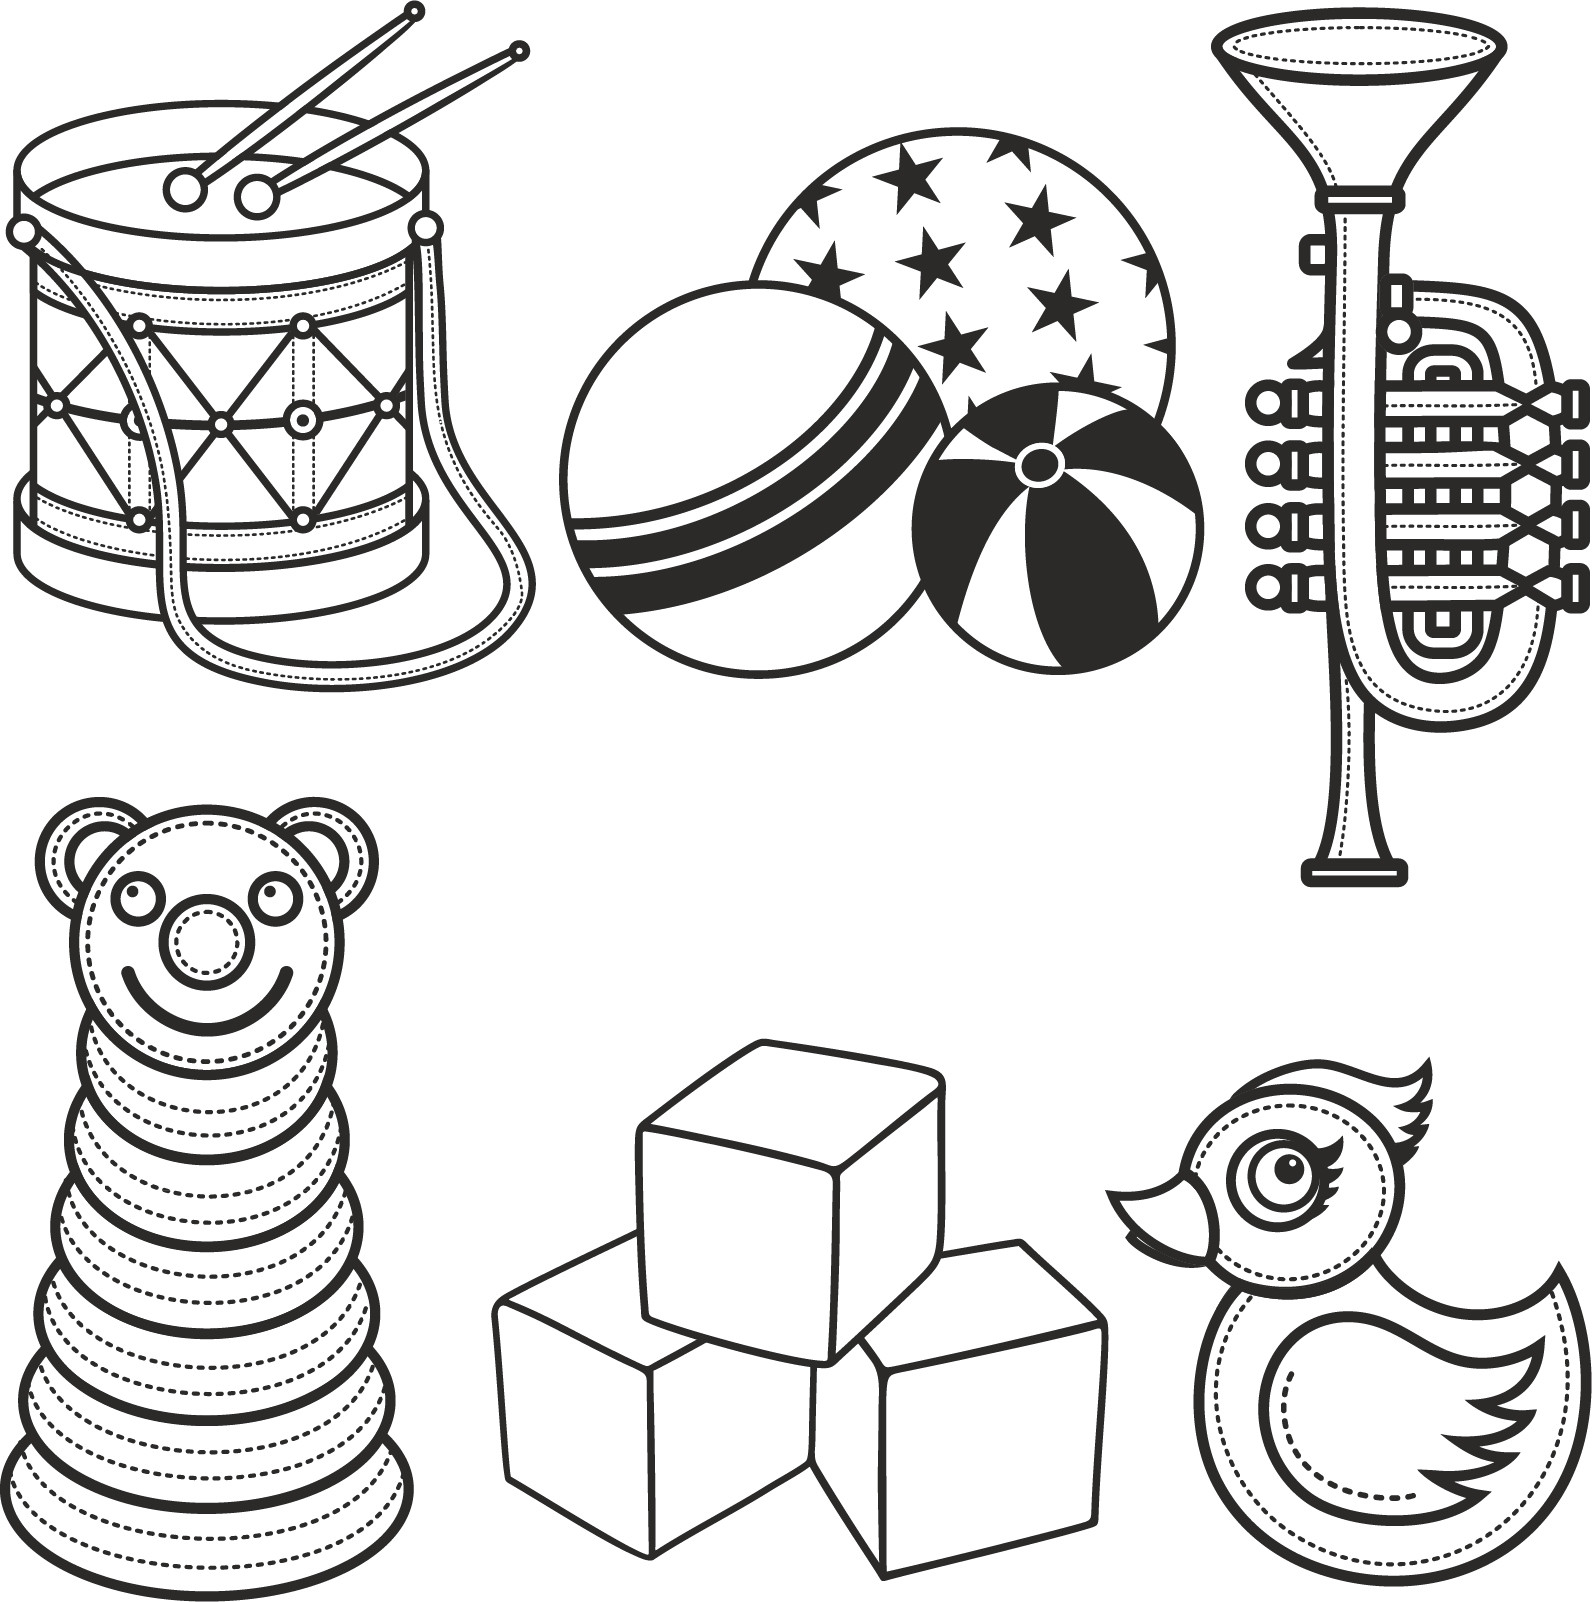 Раскраска для детей: детские игрушки: барабан с палочками, мячики, музыкальная труба, пирамидка, уточка